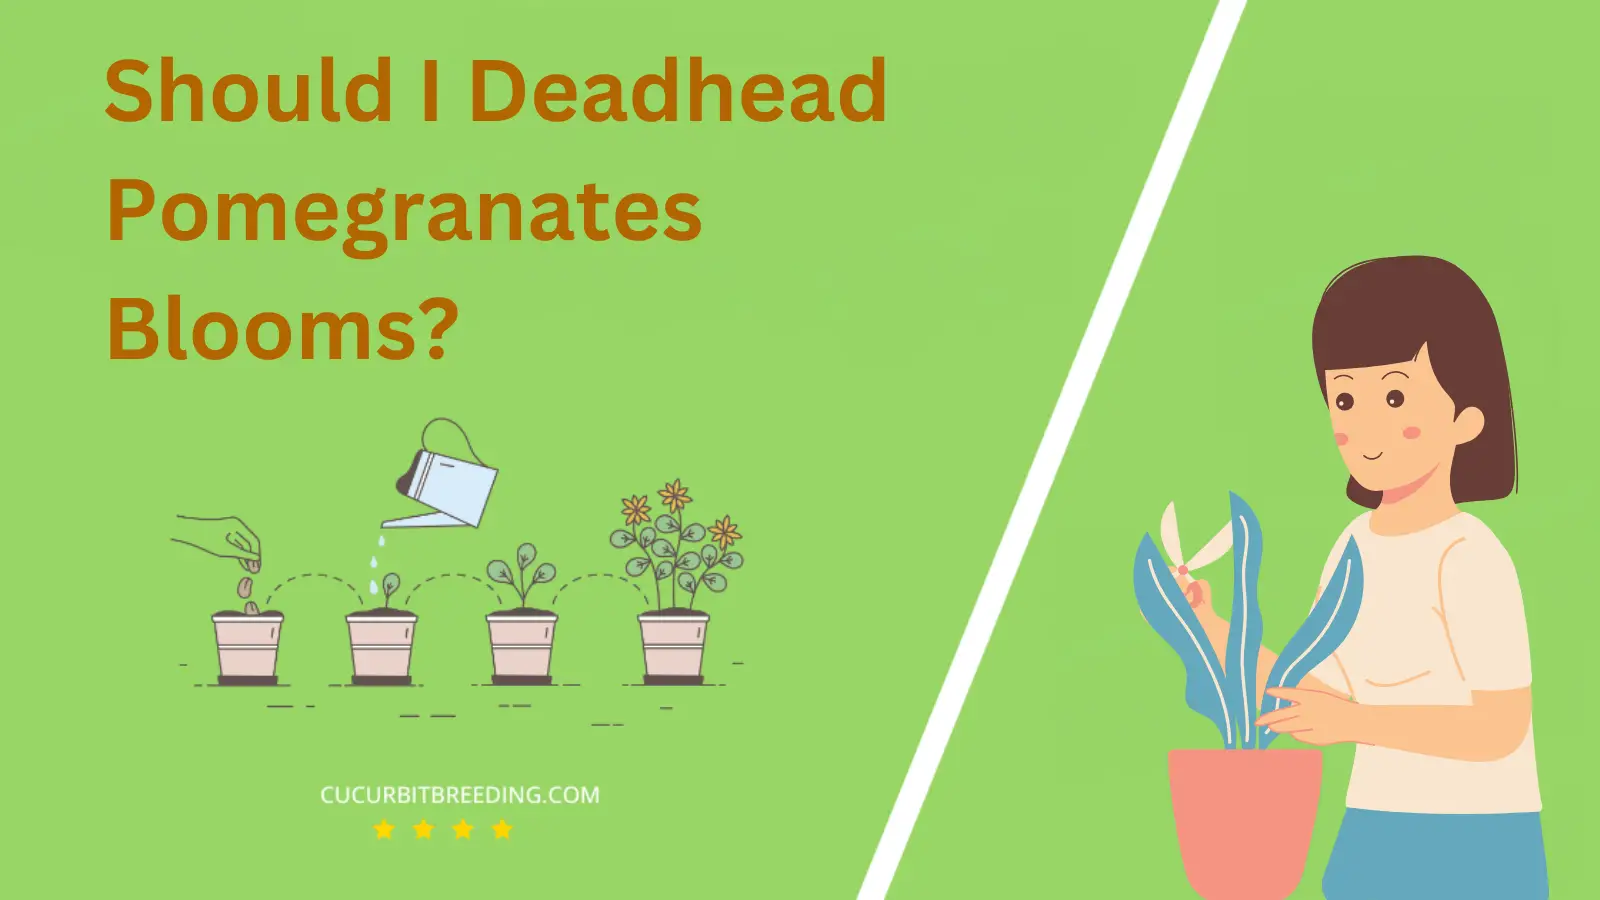 Should I Deadhead Pomegranates Blooms?